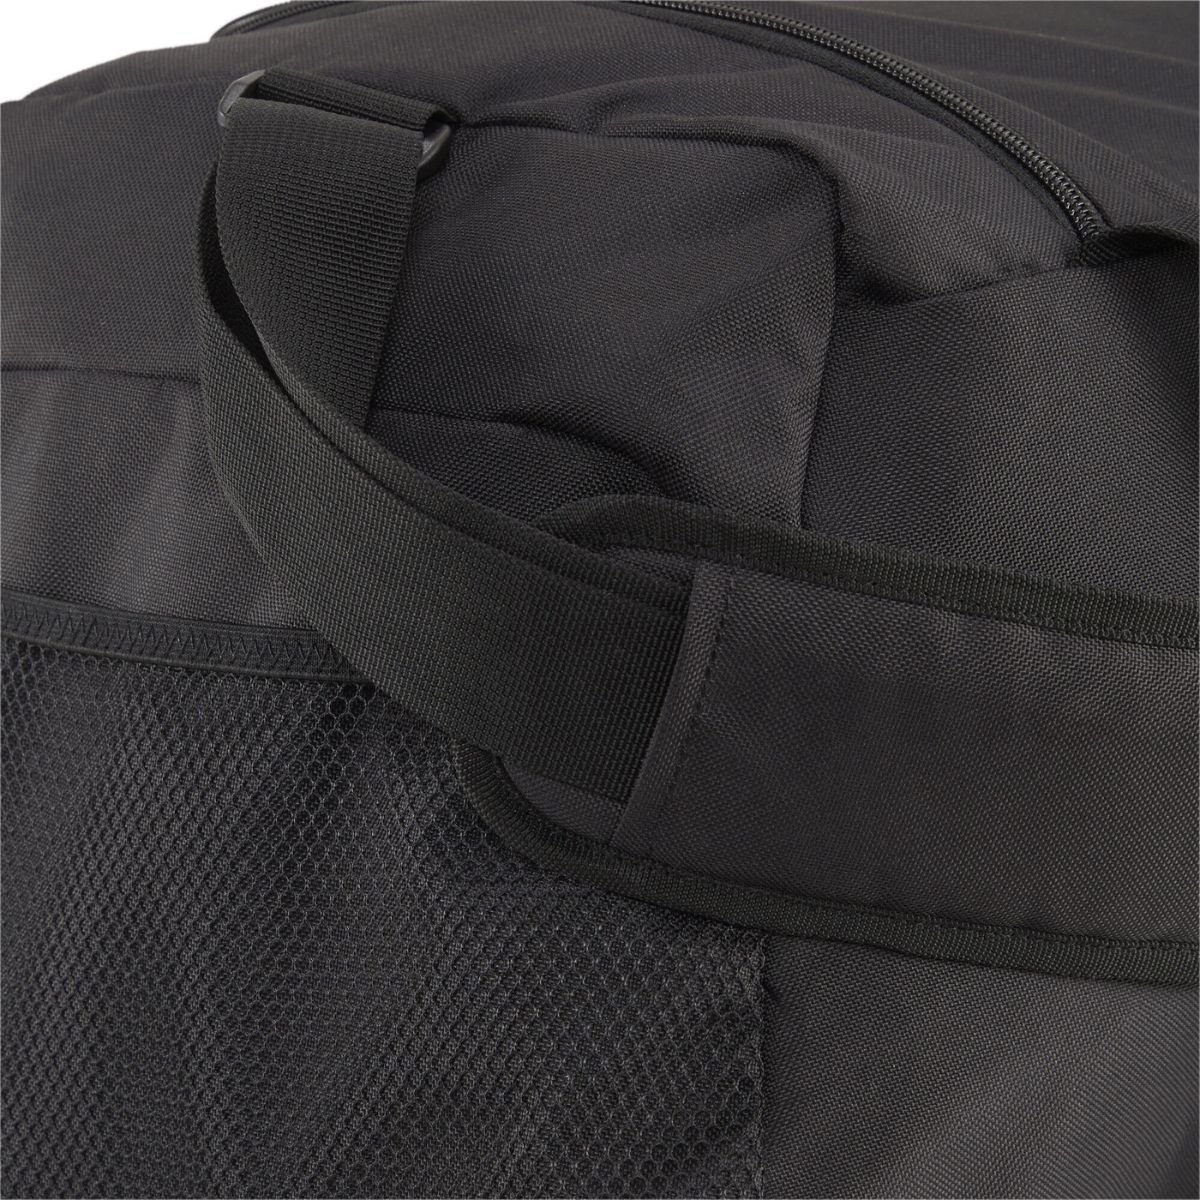 Taška Puma Fundamentals Sports Bag M - černá